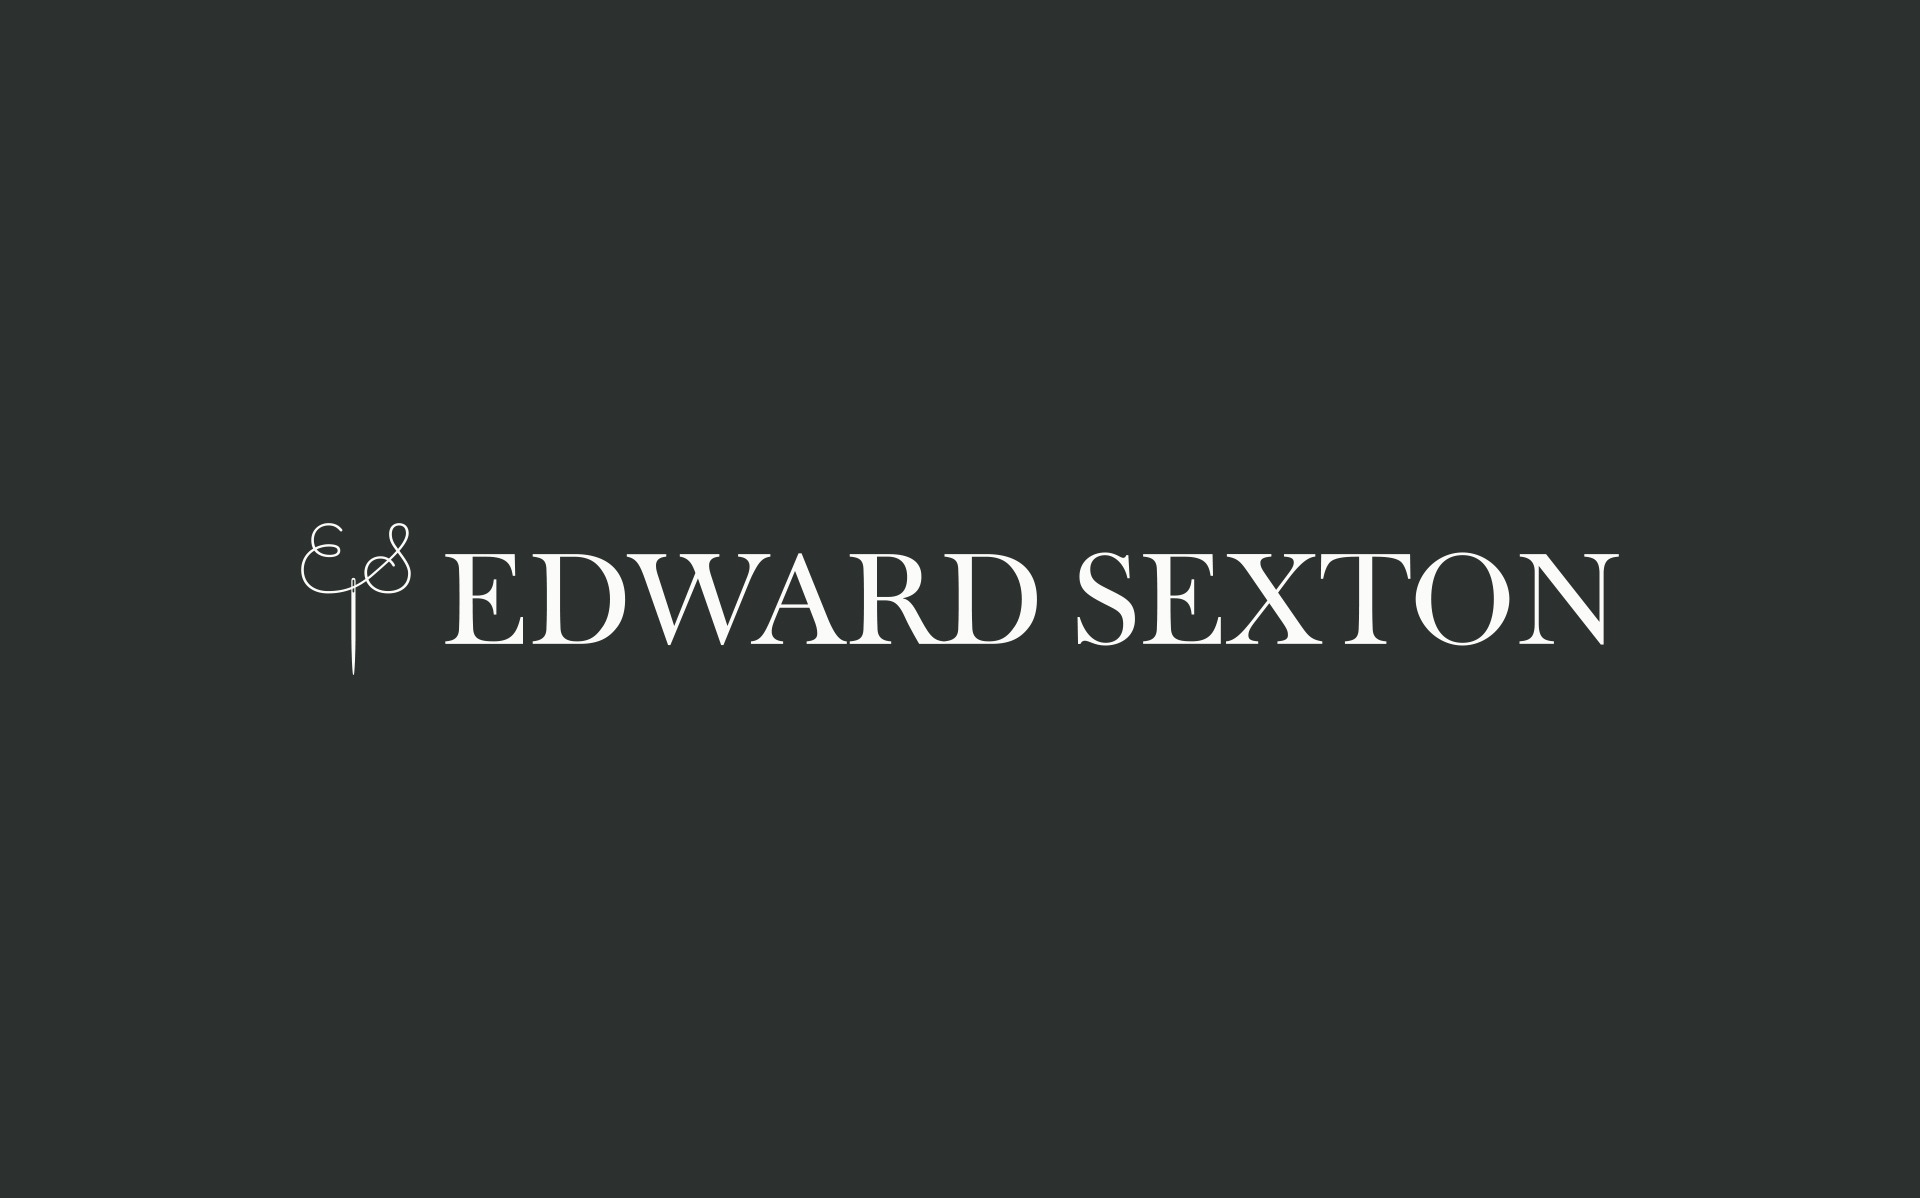 Edward Sexton logo